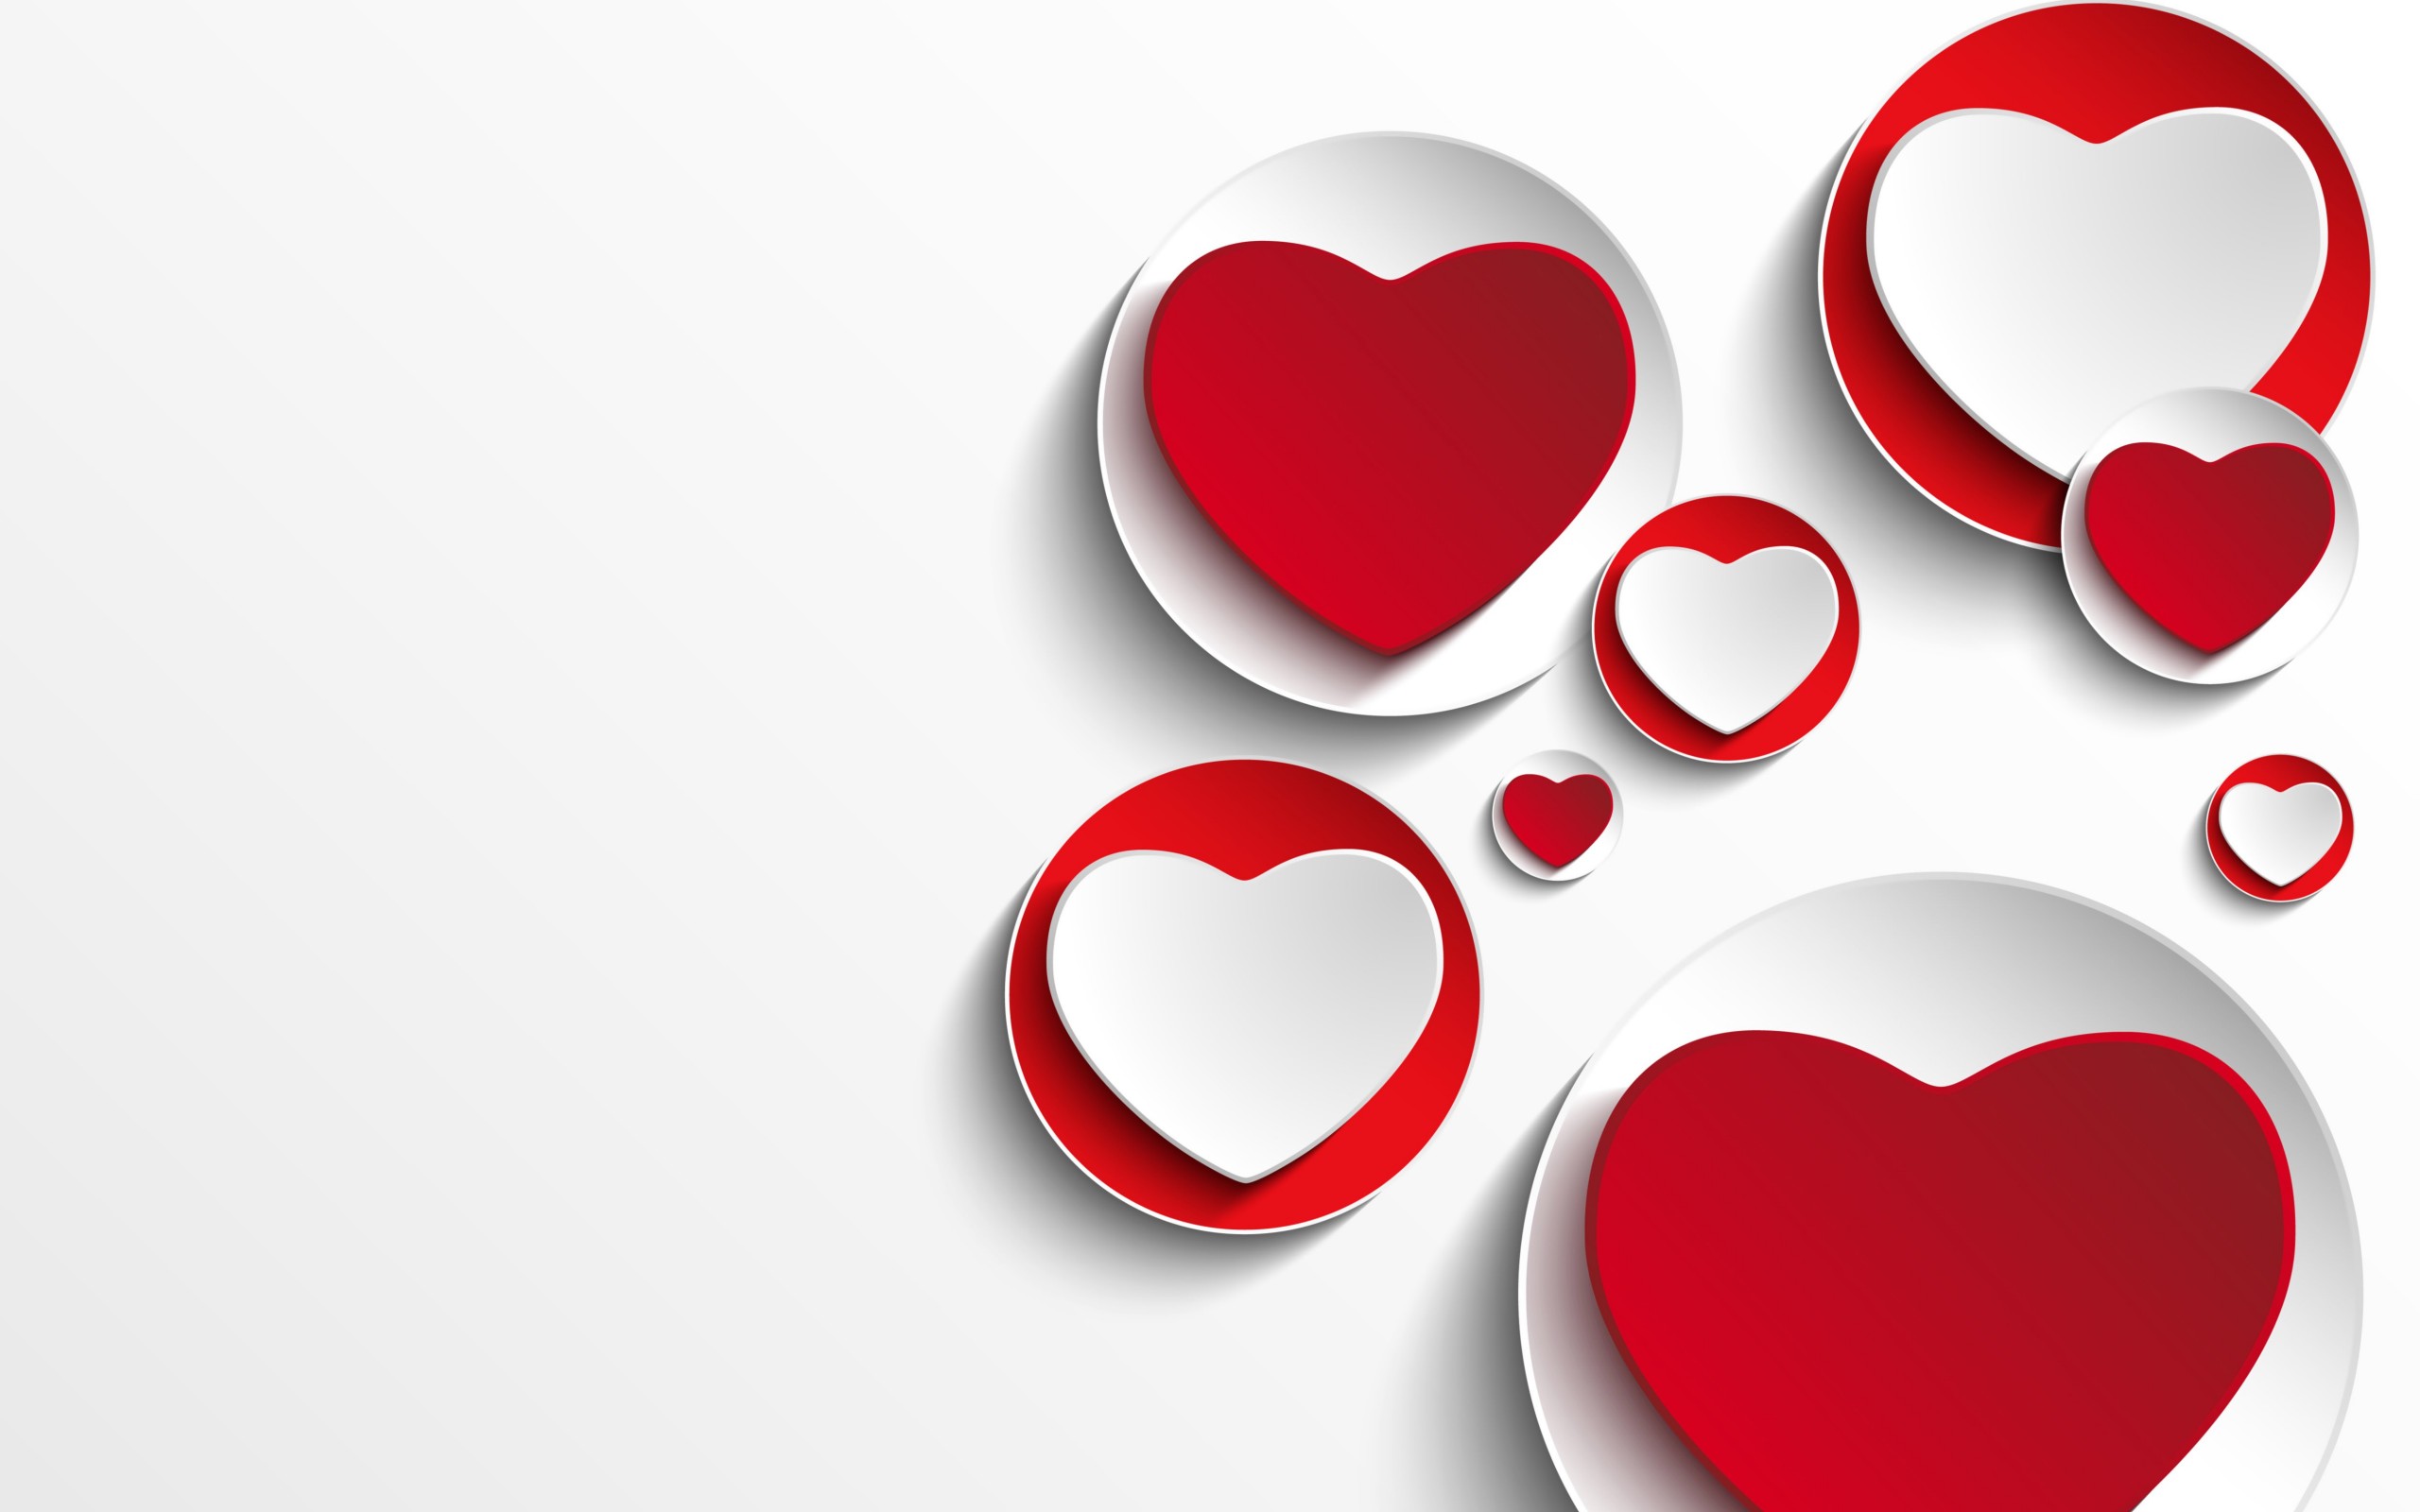 Minimalistic Hearts Shapes Wallpaper for Desktop 2560x1600